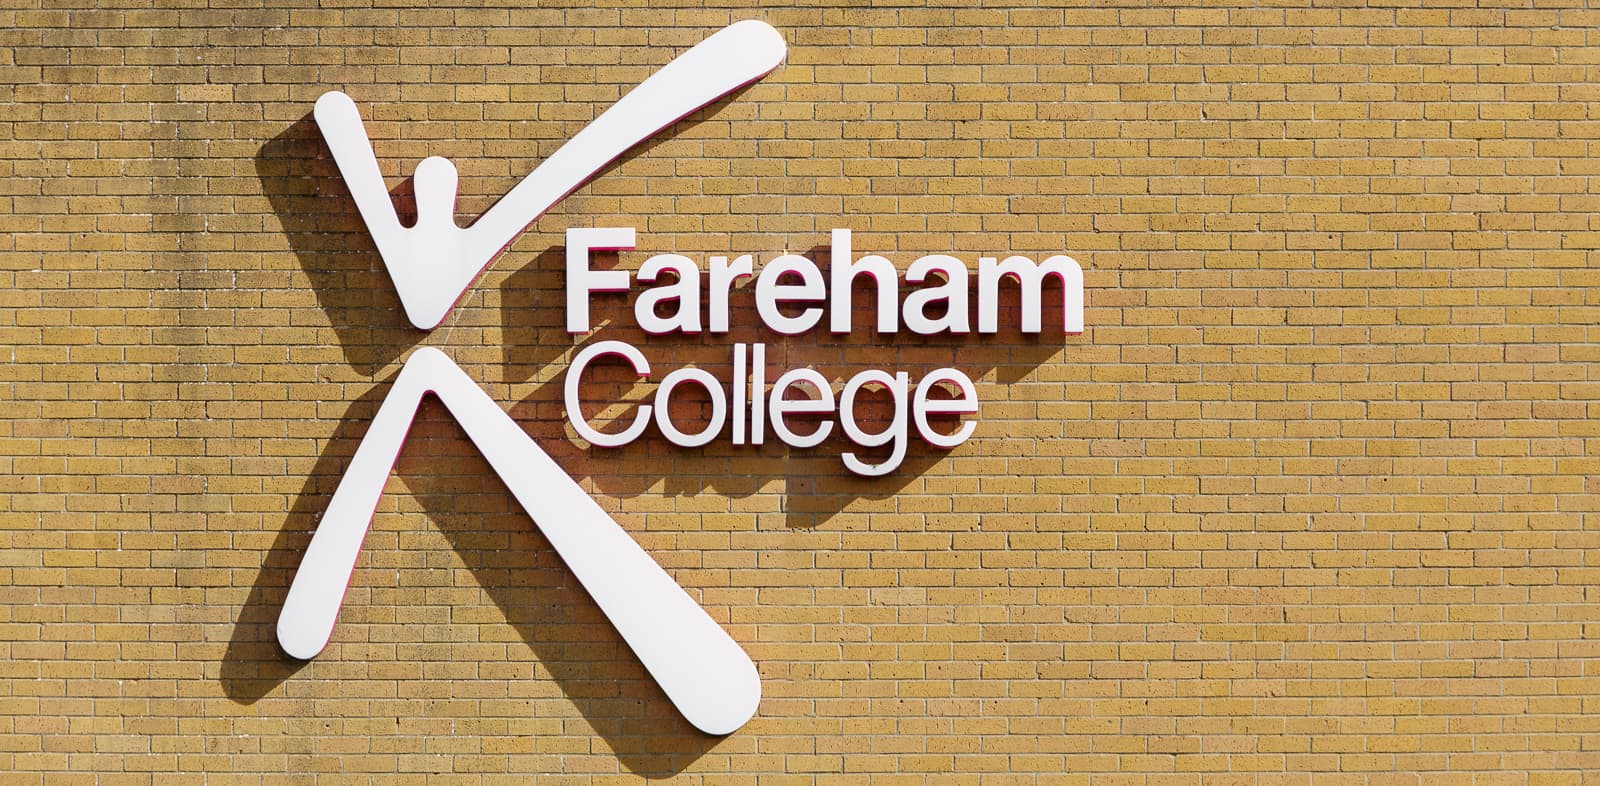 external fareham college sign